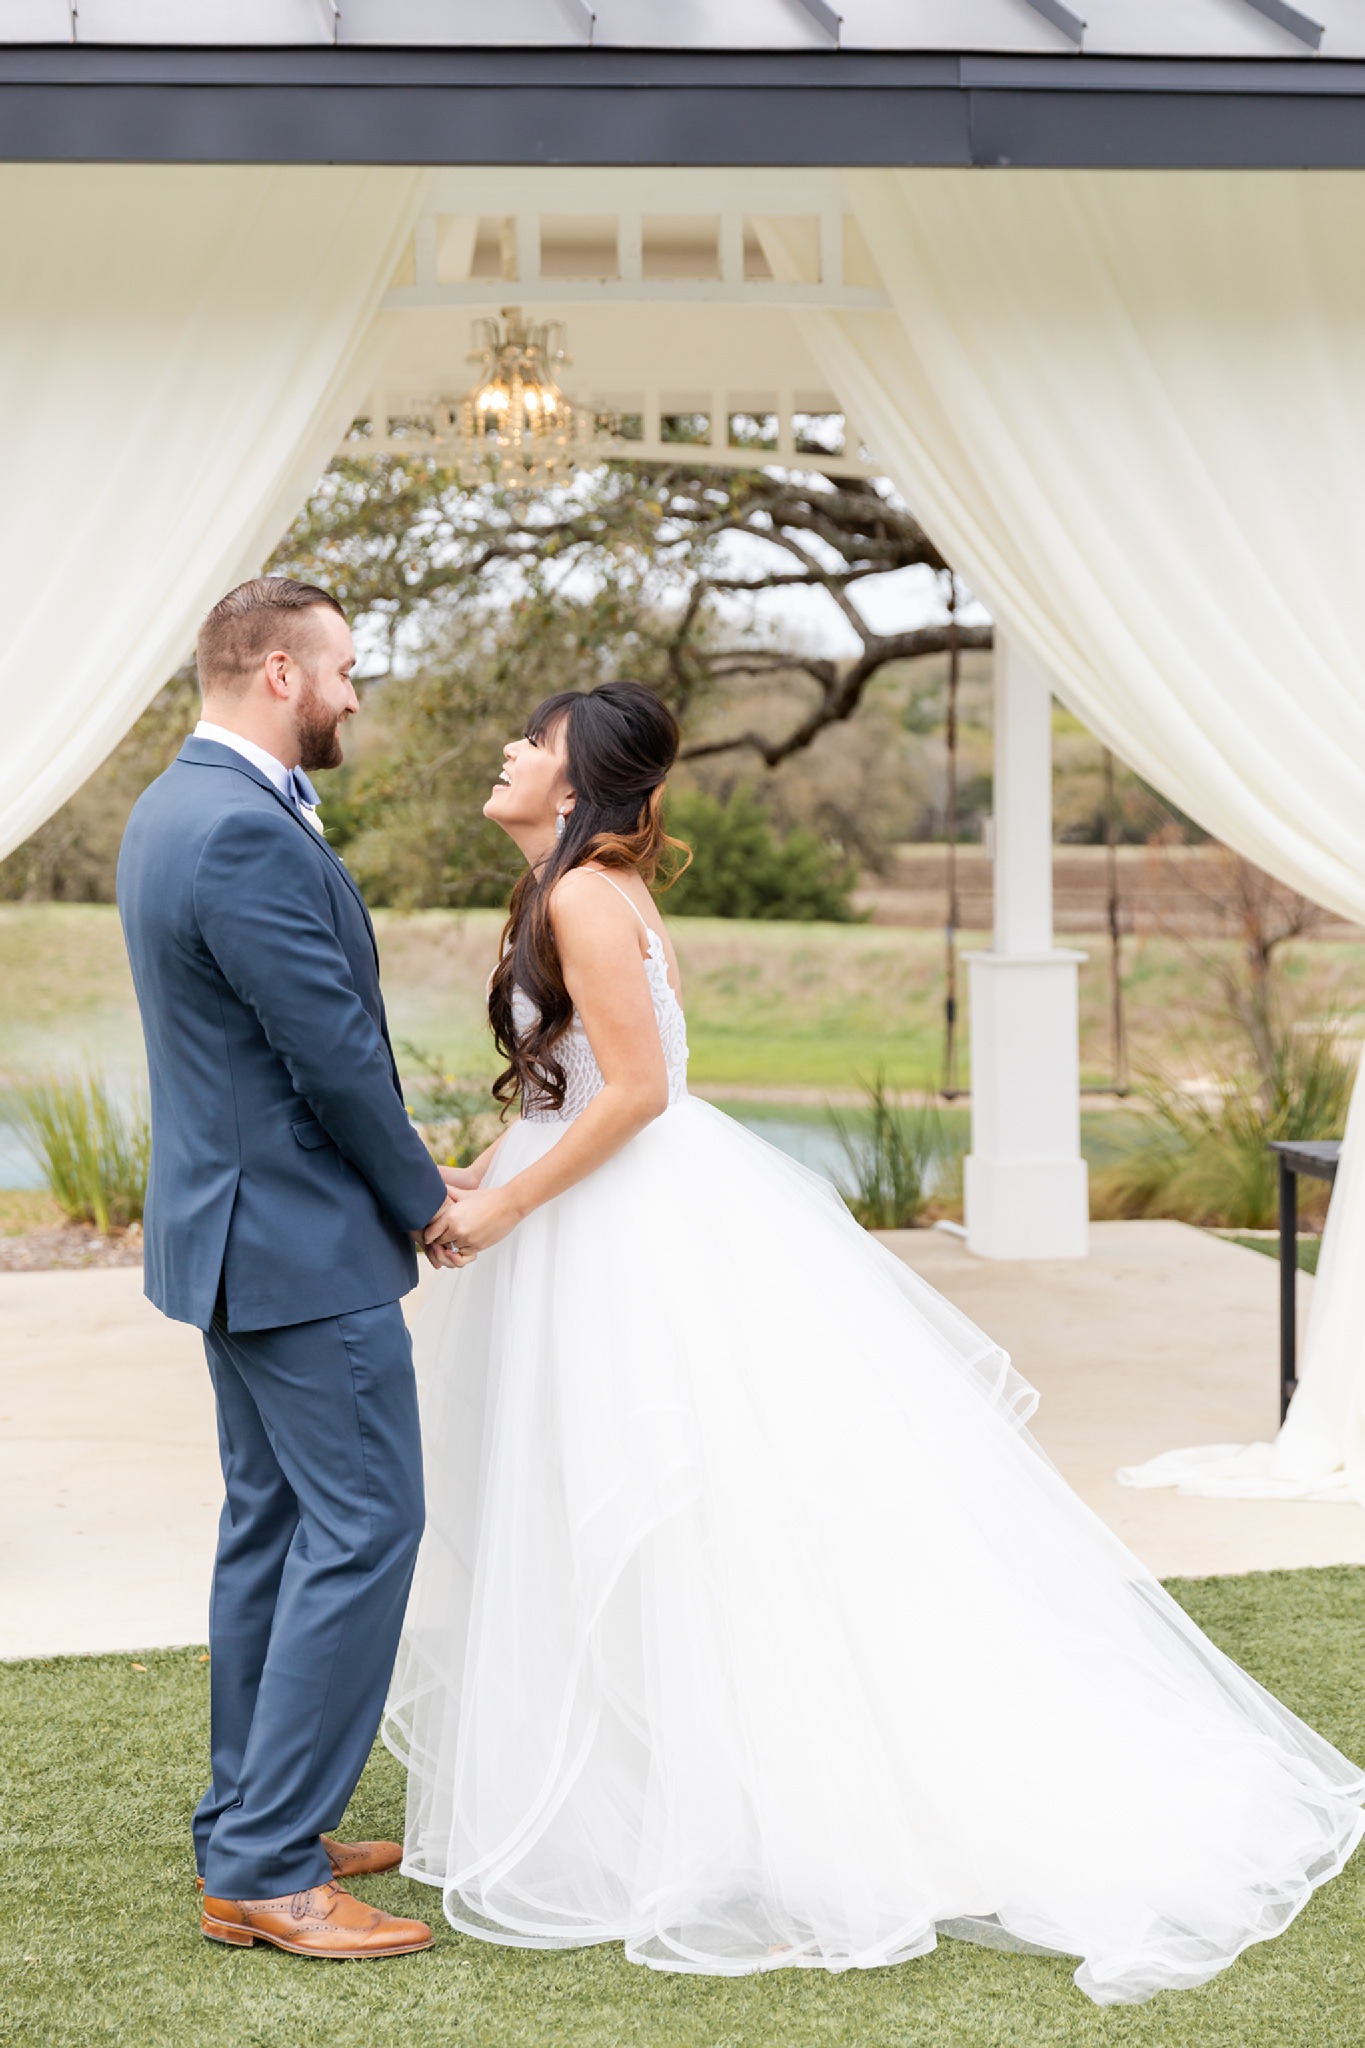 A Modern Farmhouse Inspired Wedding at Kendall Plantation in Boerne, TX by Dawn Elizabeth Studios, San Antonio Wedding Photographer